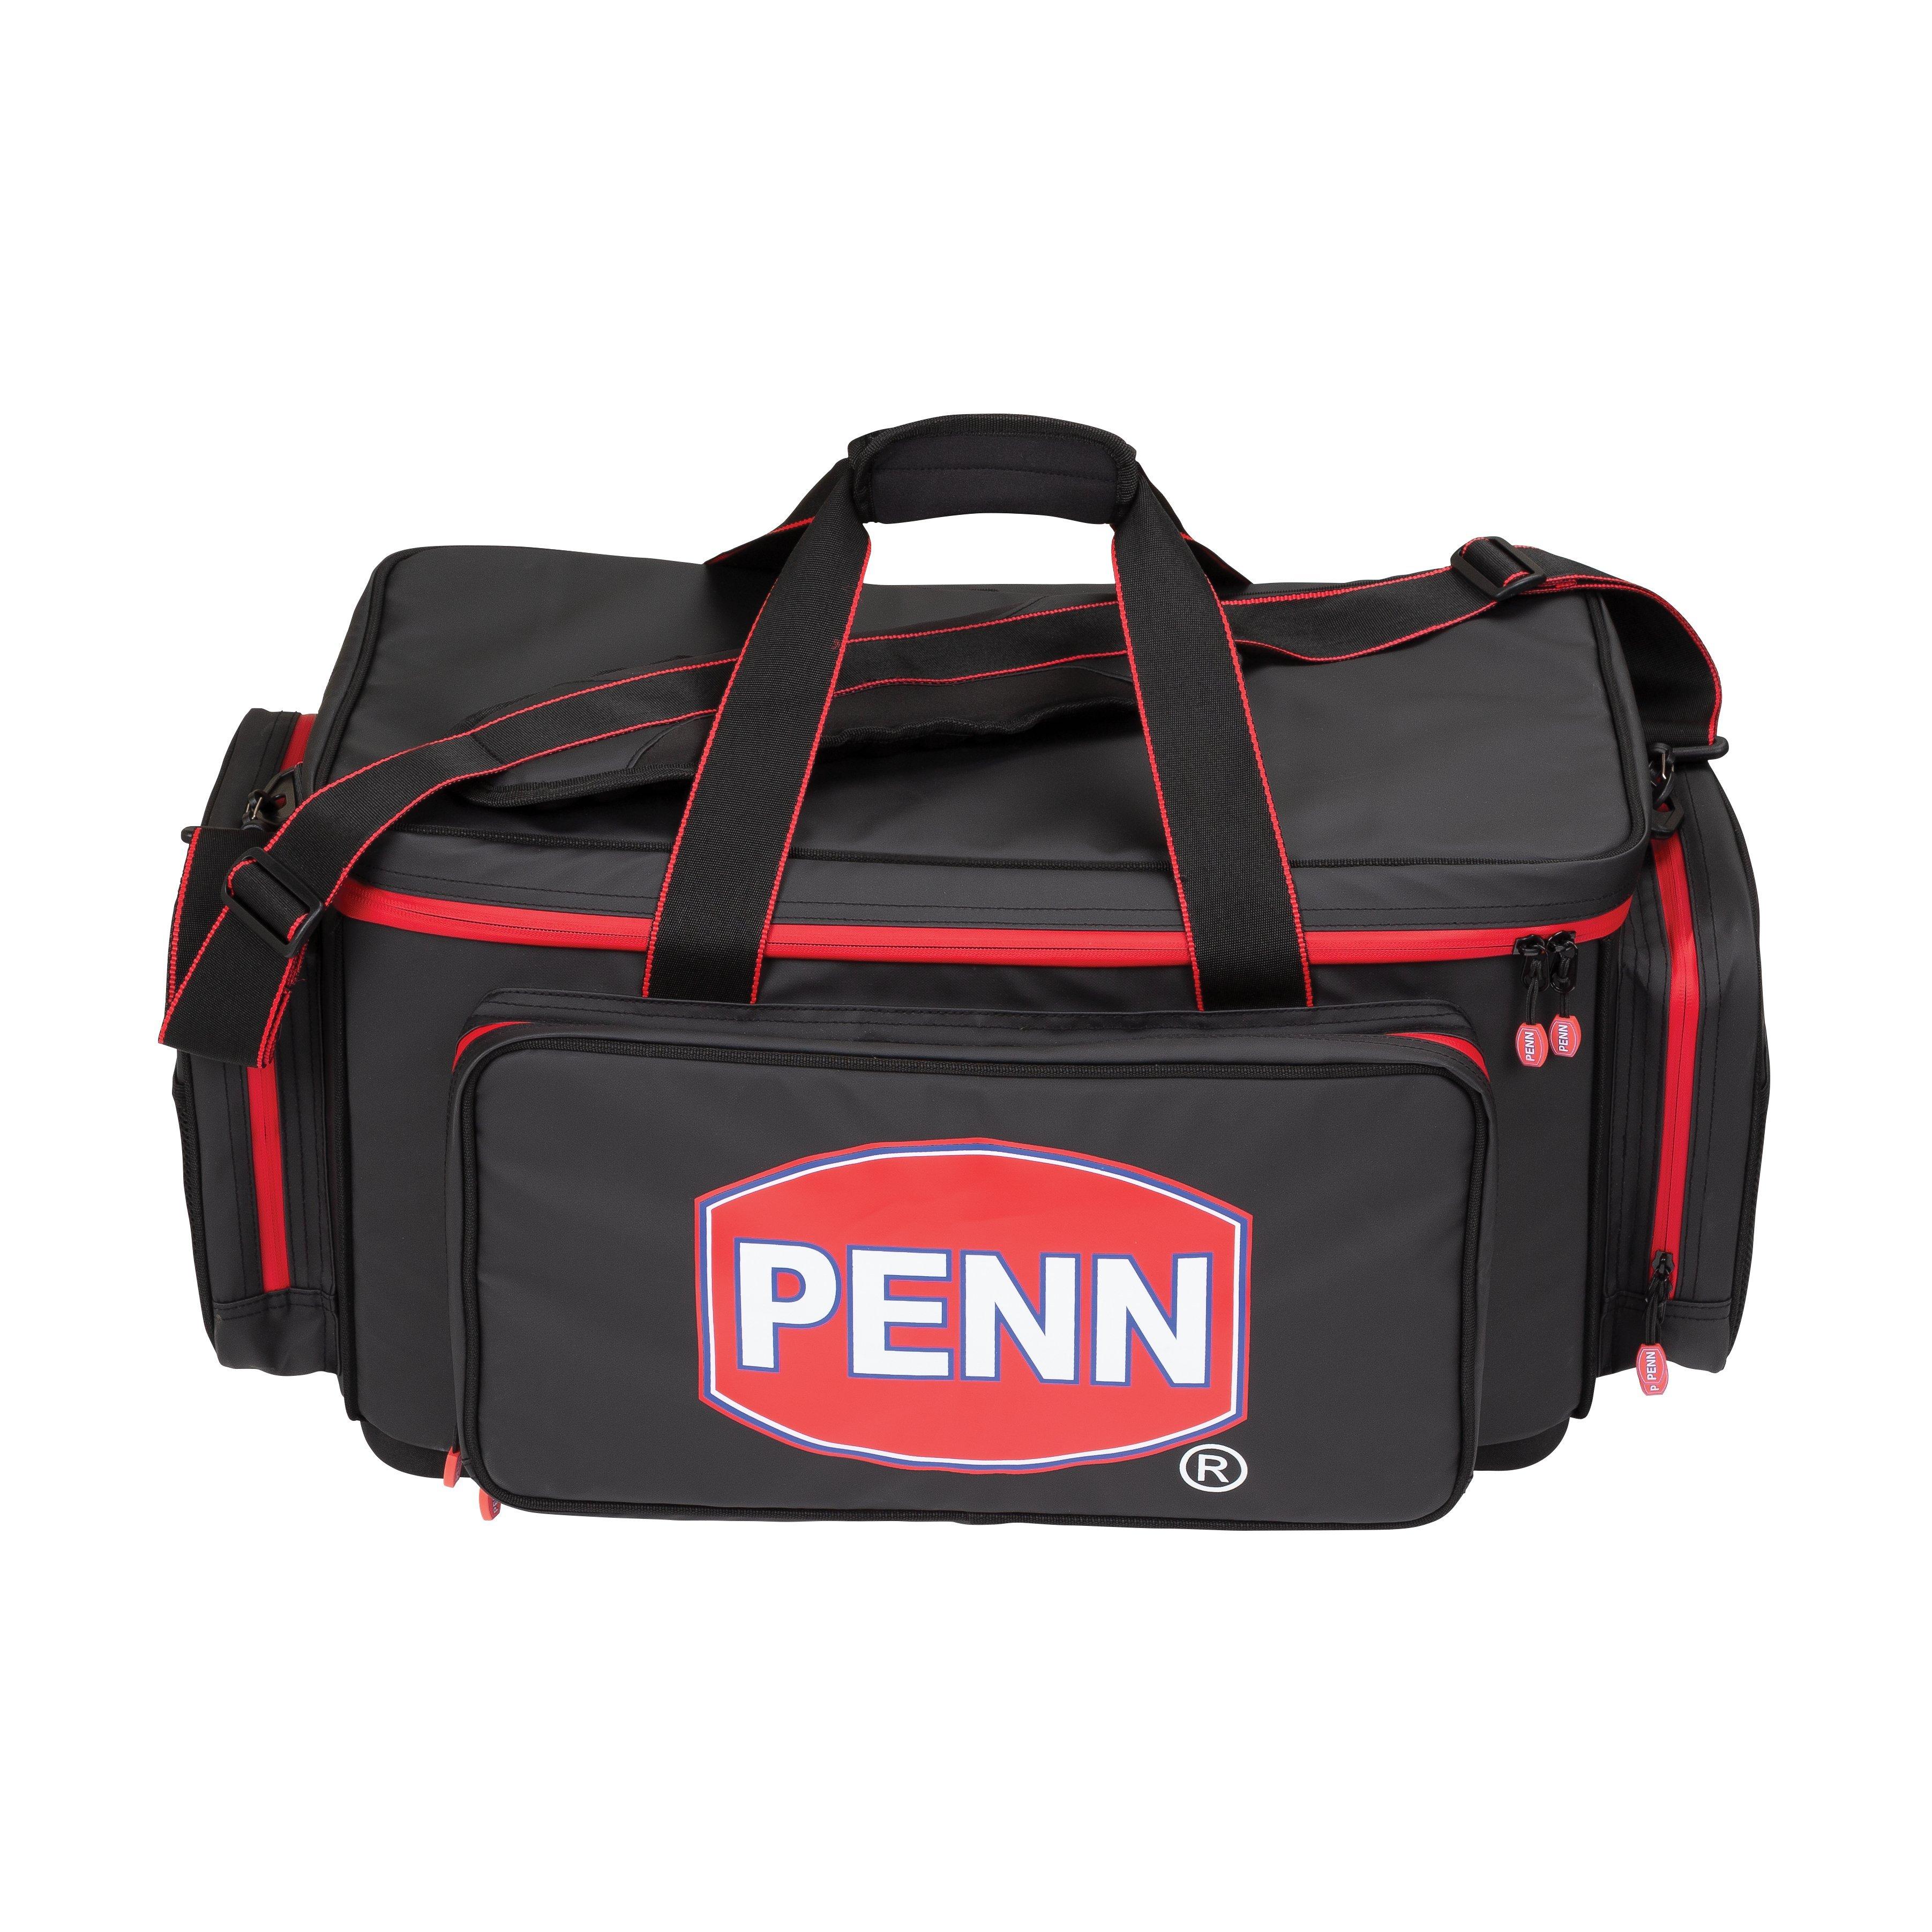 Penn Carryall Bag